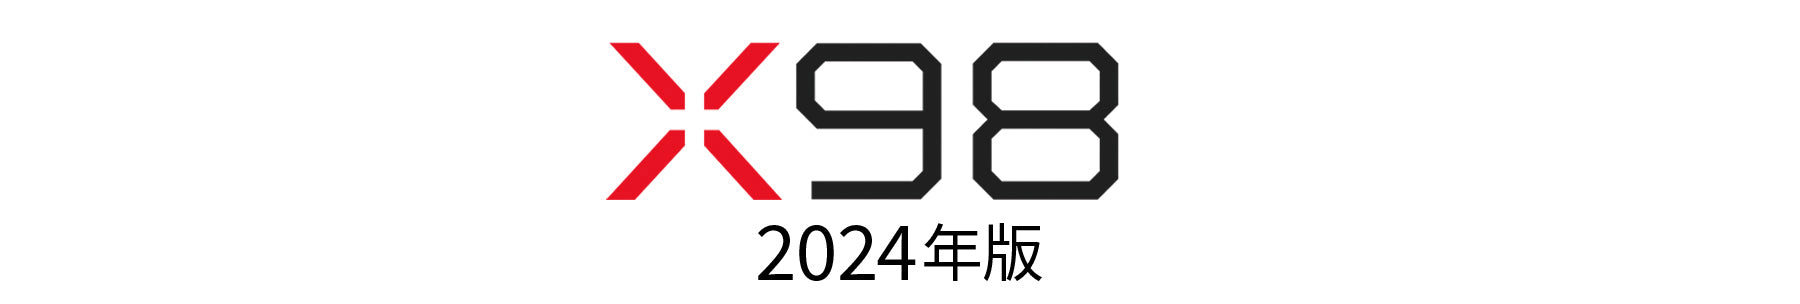 X98-JN-IPS9803TUHDR_2024ver